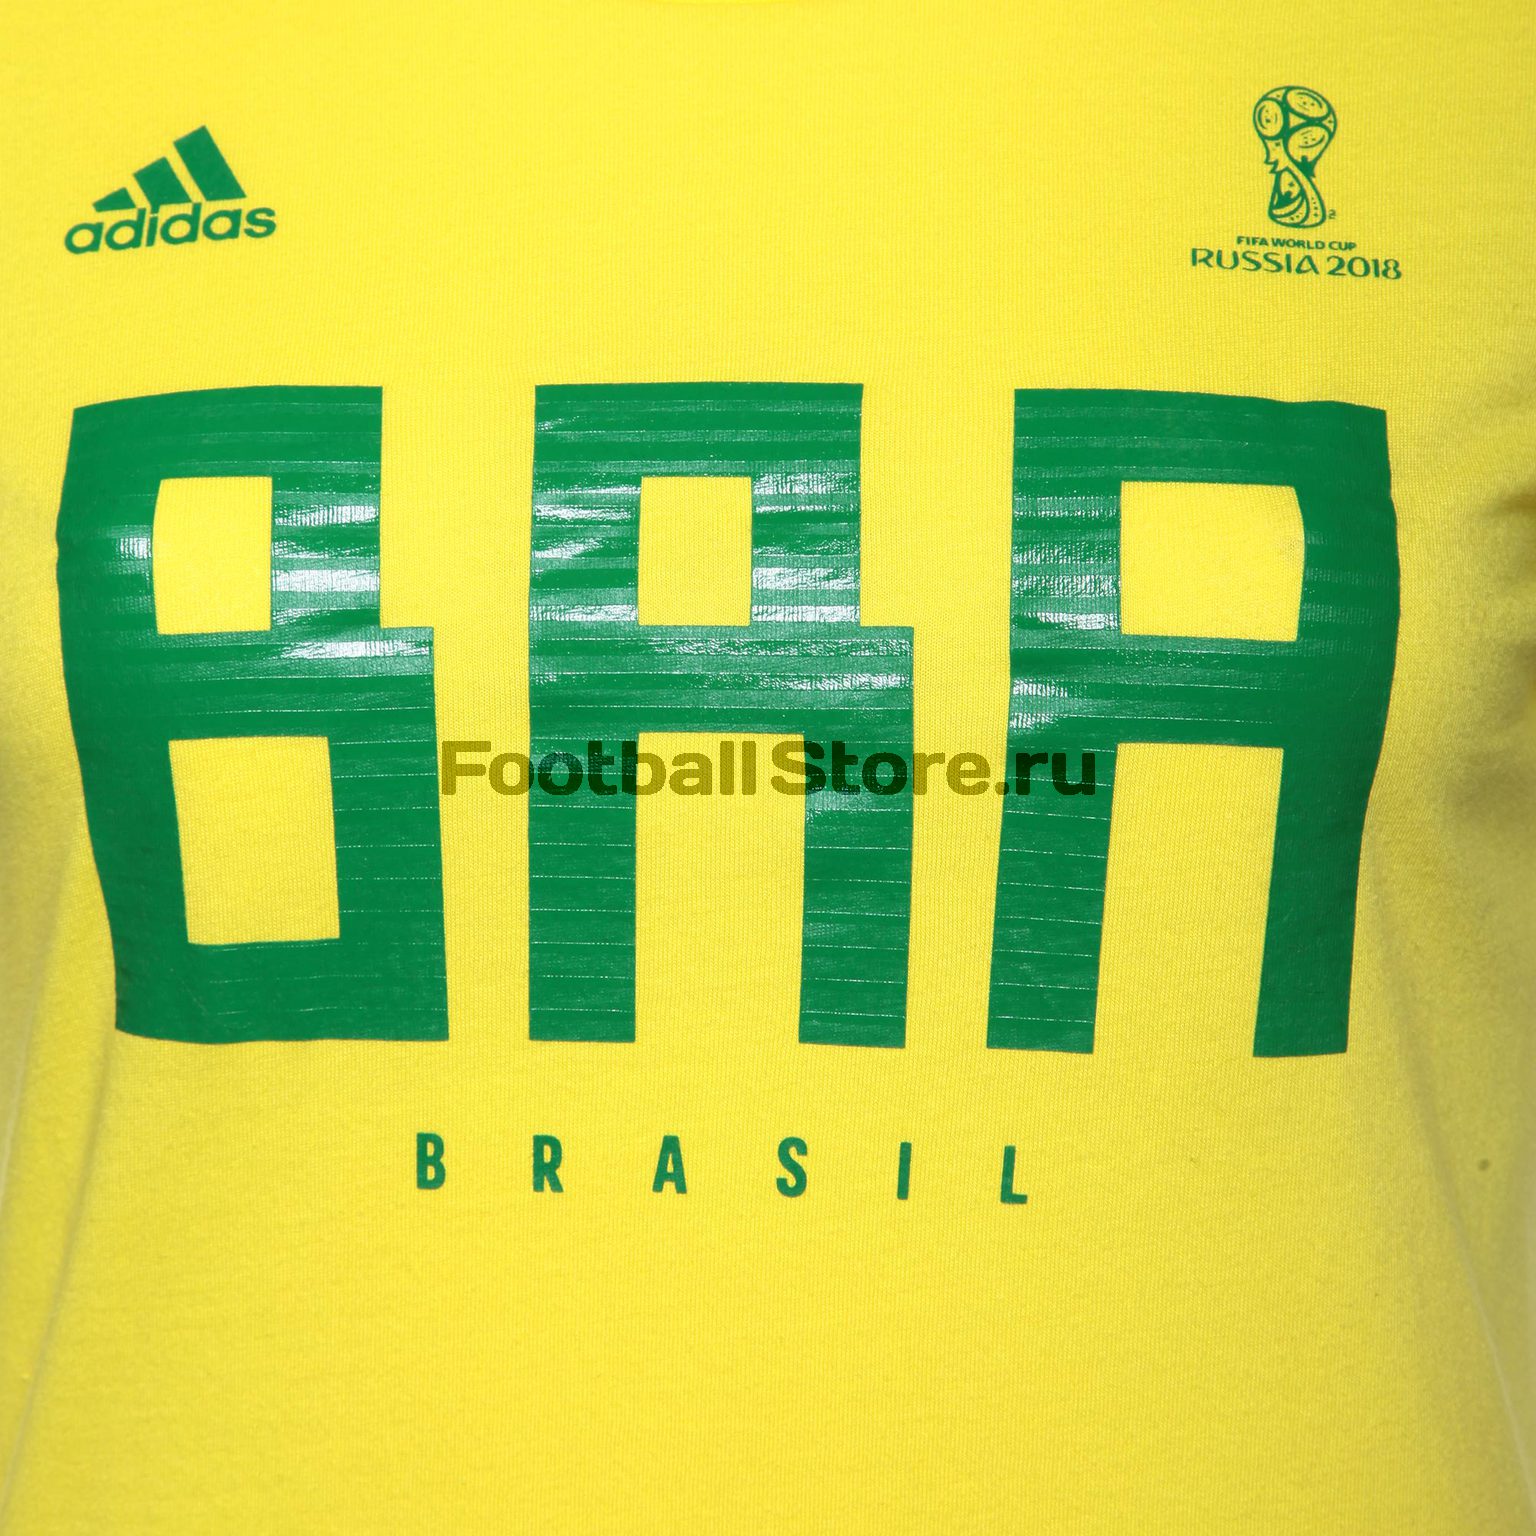 Футболка женская Adidas сборной Бразилии CW2076